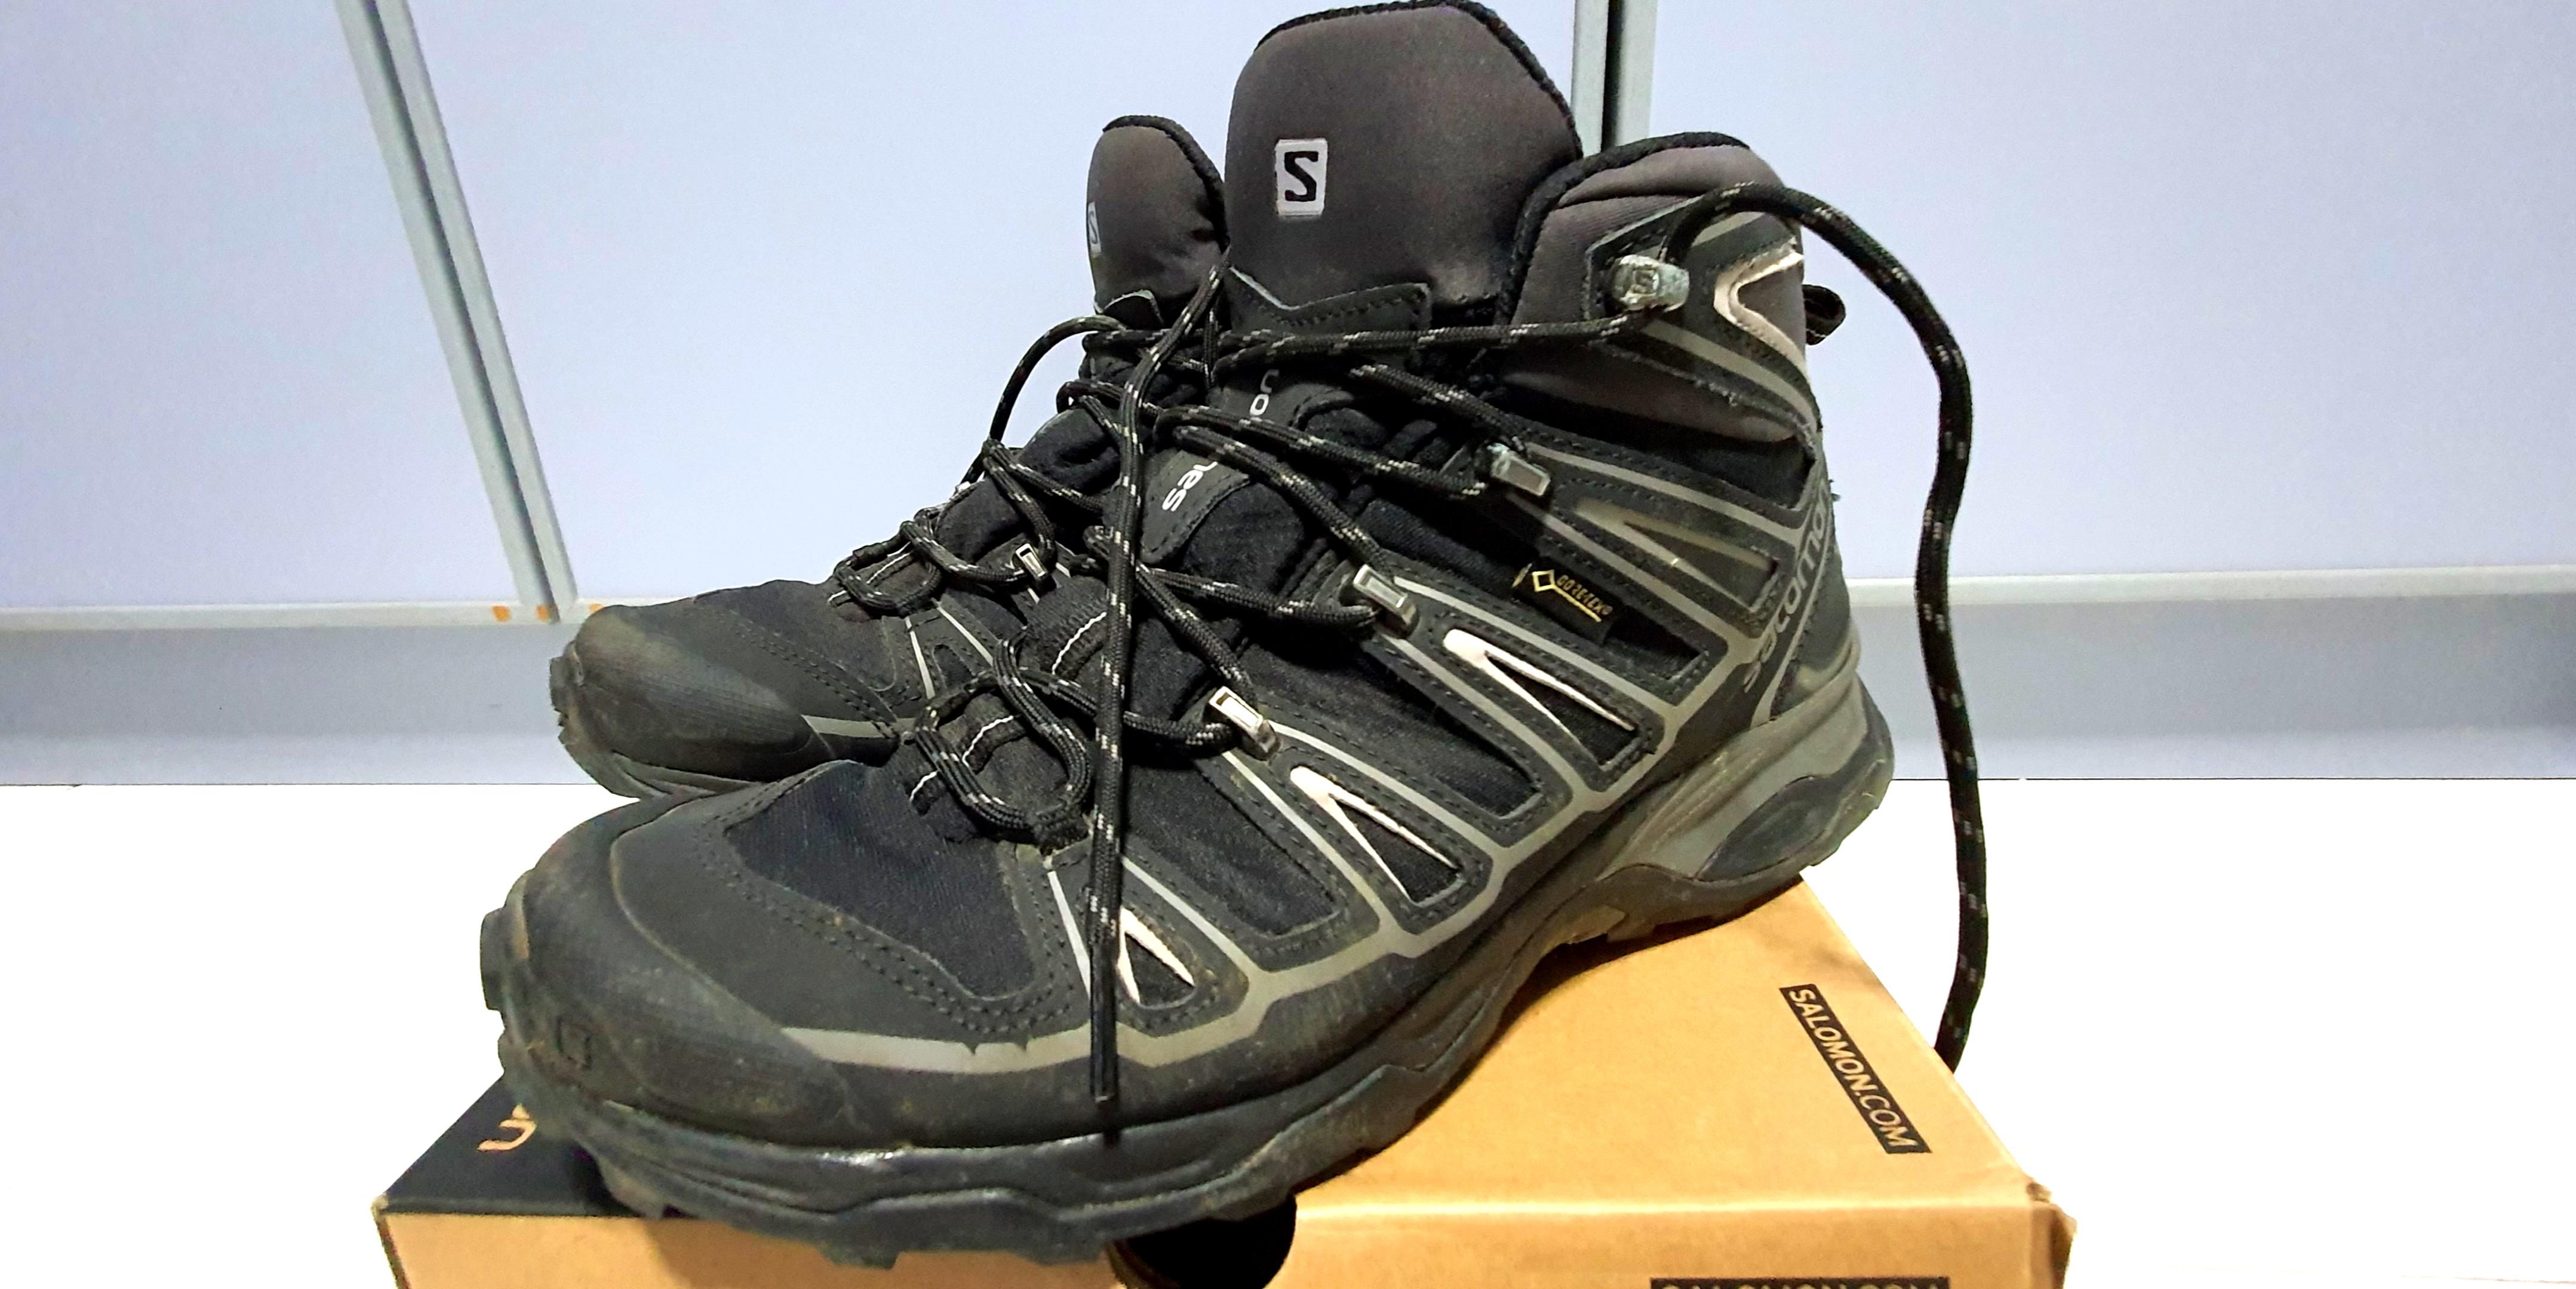 Salomon - Hiking Boots - X Ultra Mid 2 